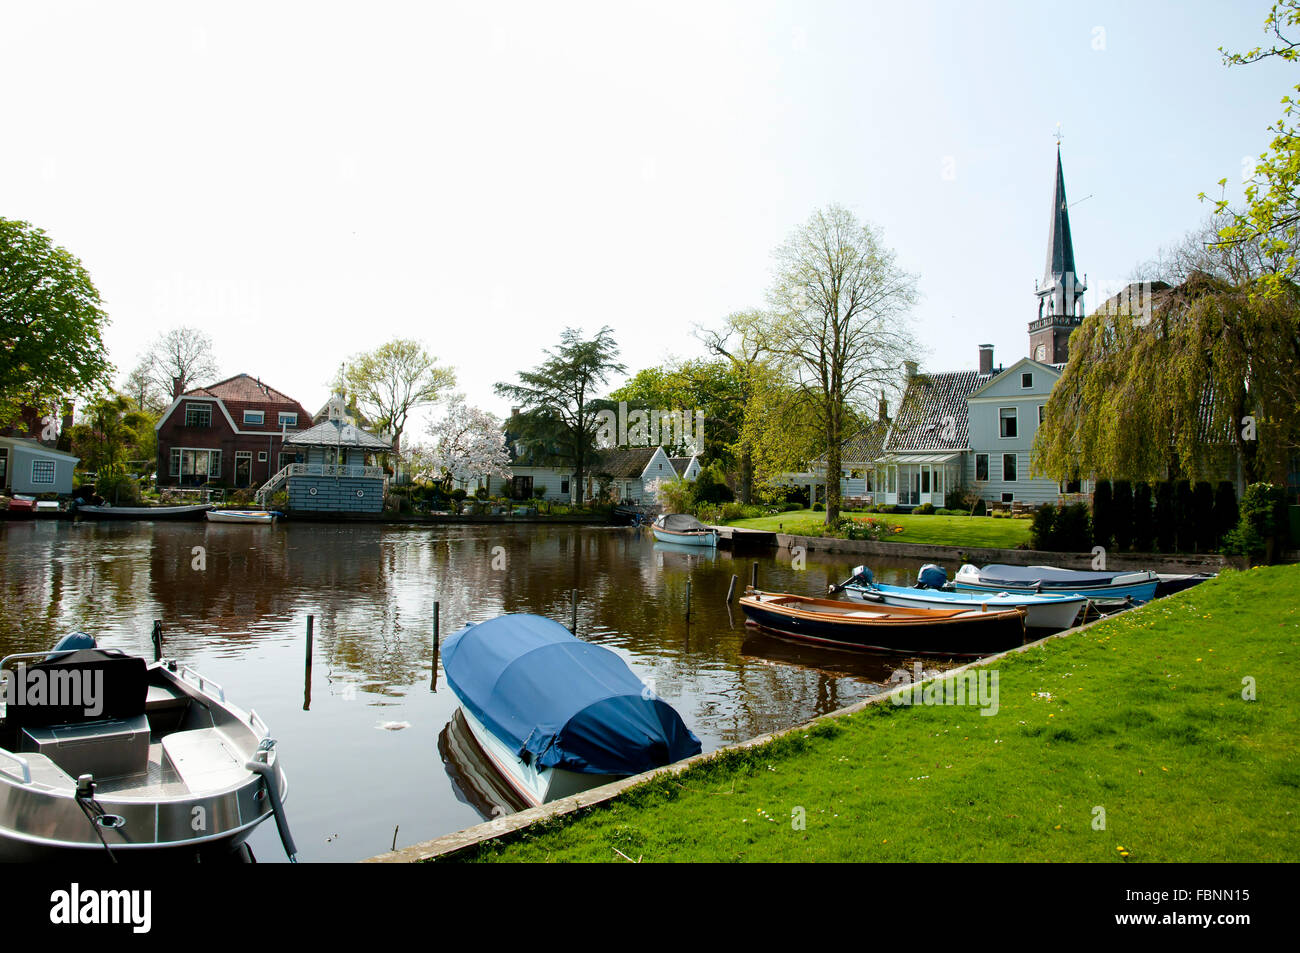 Broek in Waterland - Netherlands Stock Photo